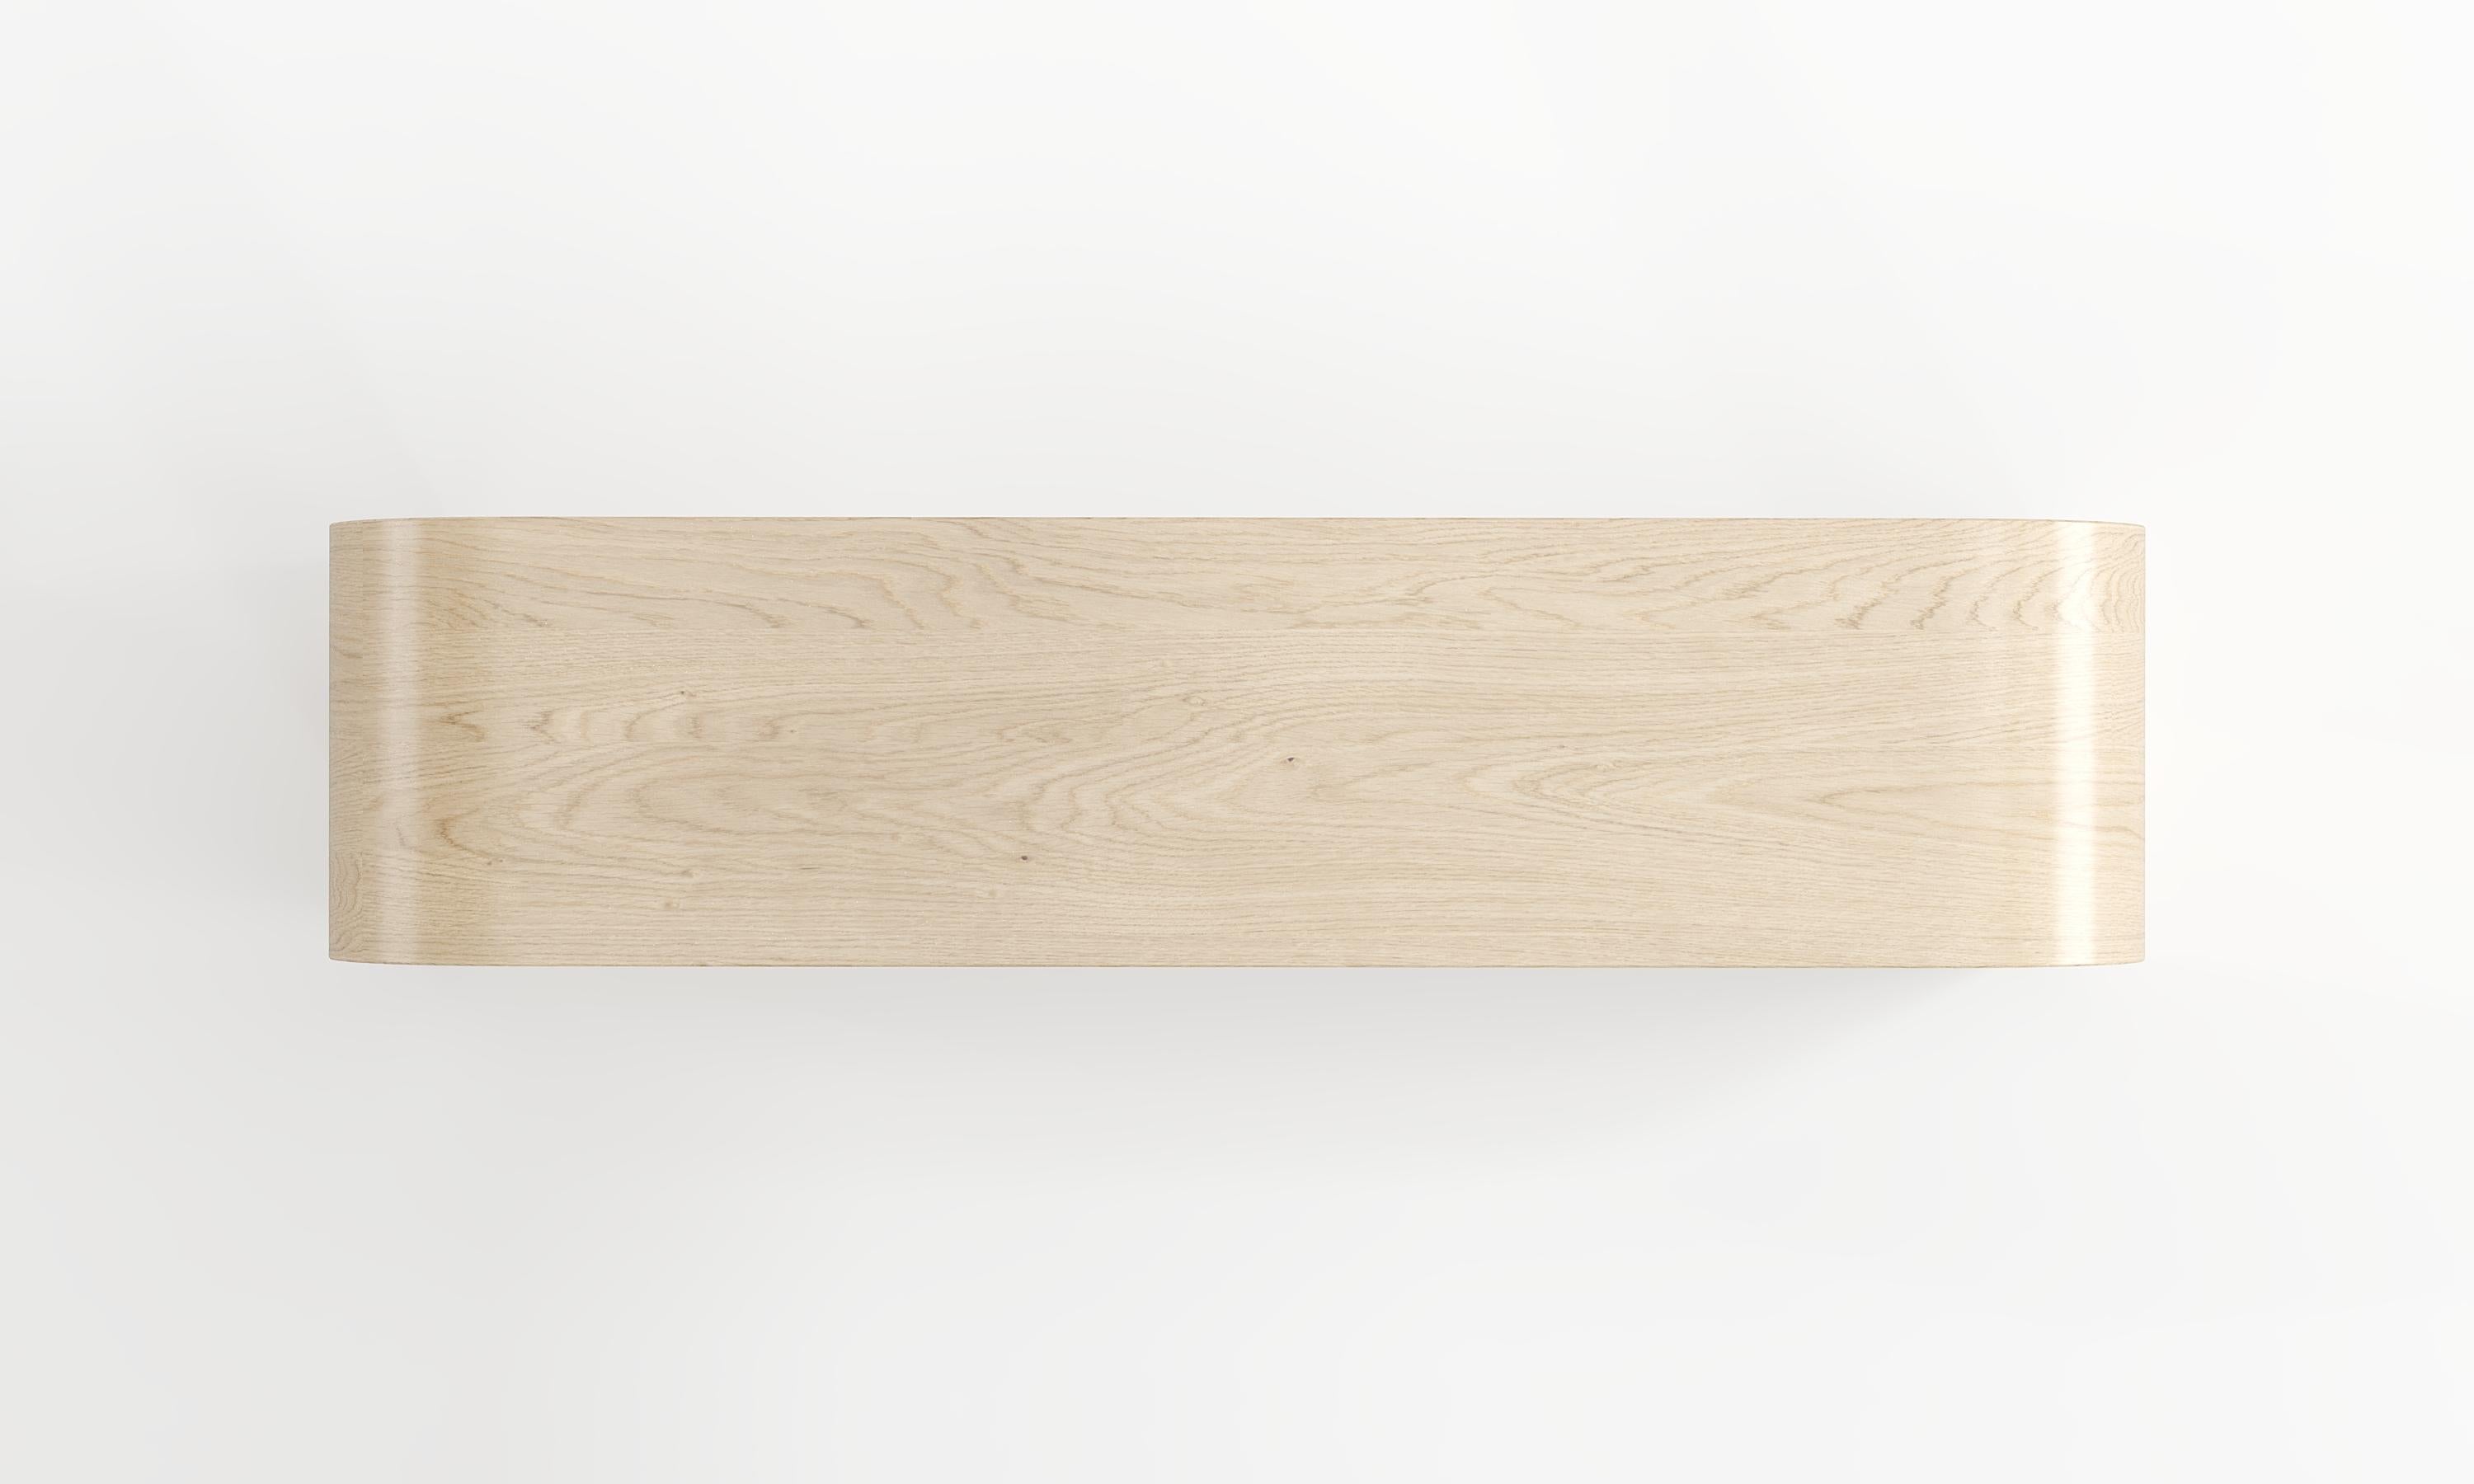 La table console Adagio est une œuvre d'art parfaite pour ceux qui recherchent sophistication et élégance. Cette pièce intemporelle, fabriquée à partir du bois et du marbre les plus fins, peut être la pièce maîtresse de tout espace de vie. La table